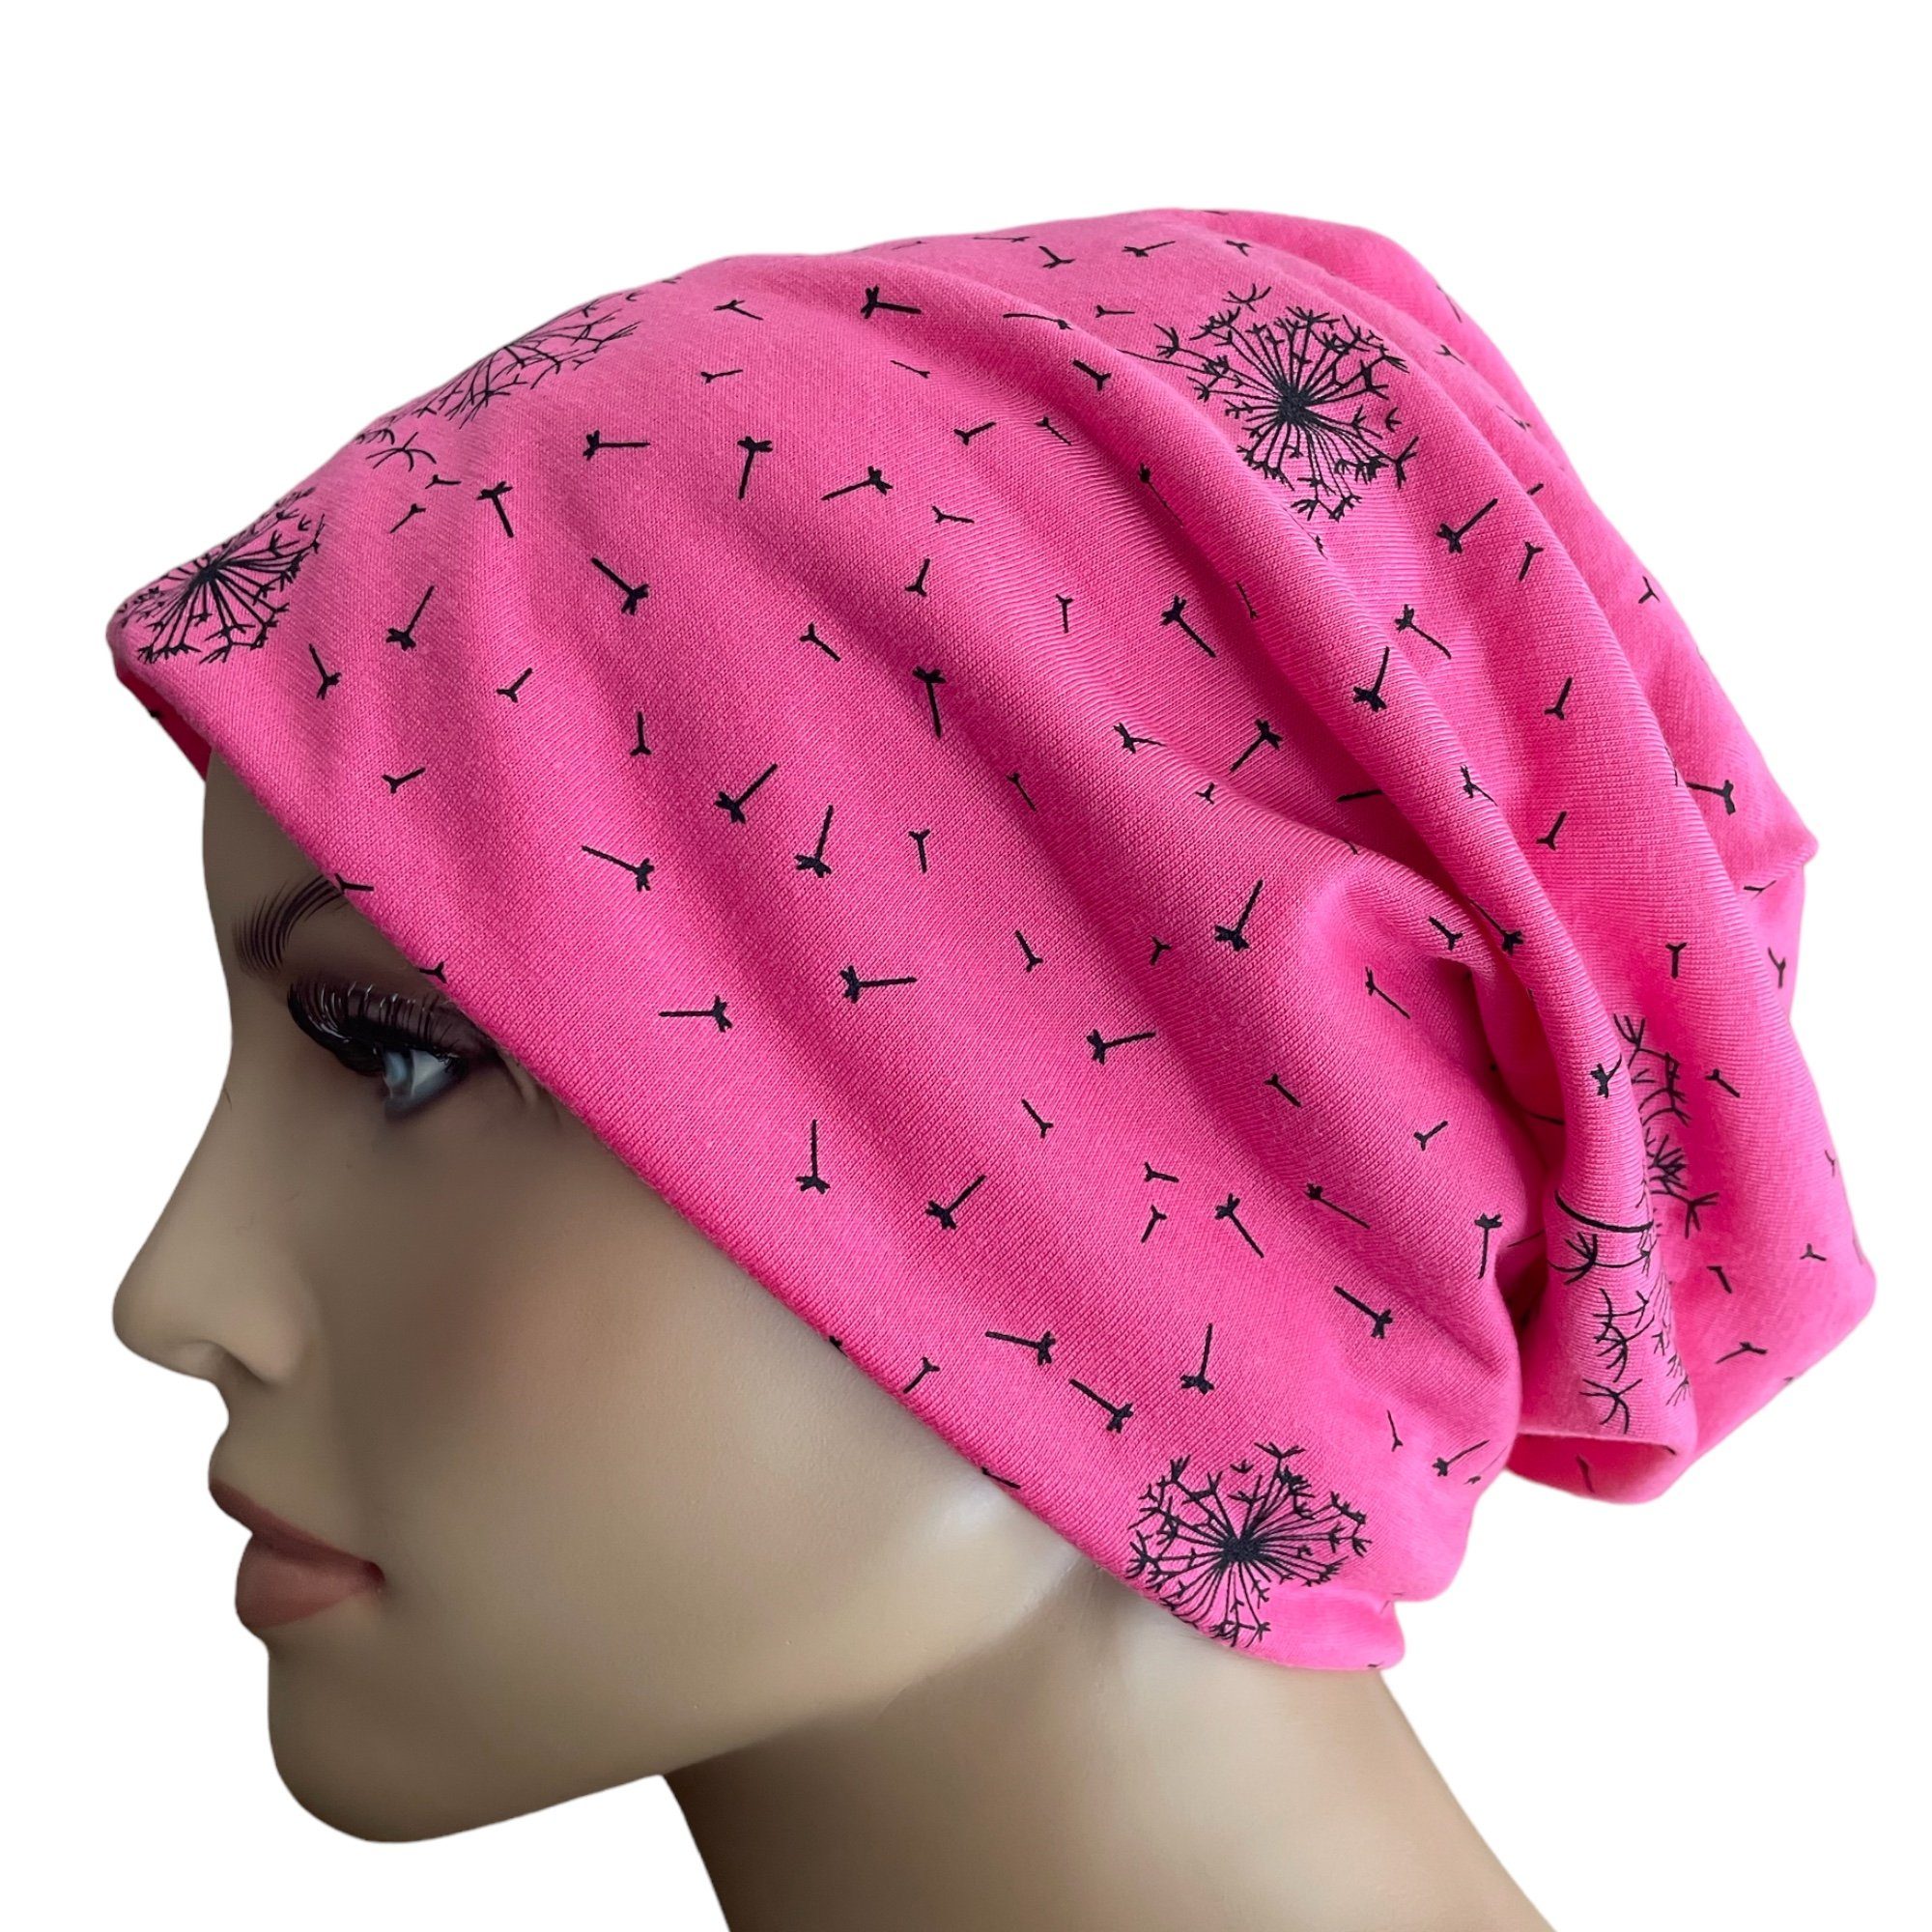 Taschen4life Beanie Slouch Longbeanie Mütze leichte Damen Beanie, Motiv Pusteblume, Sommermütze pink